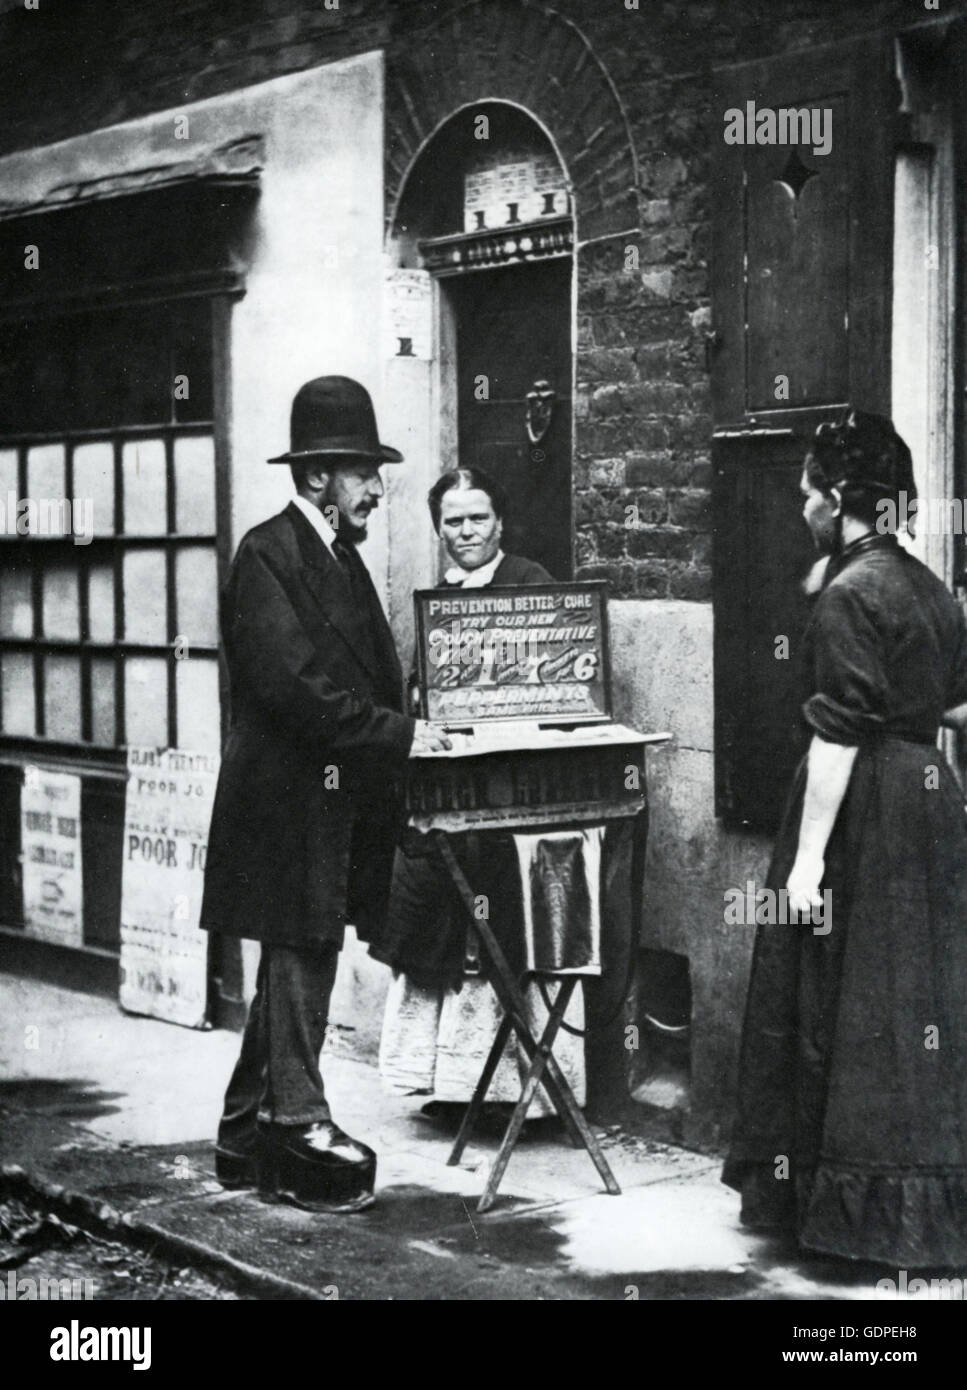 LONDON STREET COLPORTEUR dans platform shoes, montre son antitussif à propos de 1862 dans un quartier pauvre. L'affiche à gauche de la publicité d'un montrant de pauvres 'joe' et autres œuvres de Oscar photographe pionnier au Théâtre de verre Rejlander Banque D'Images